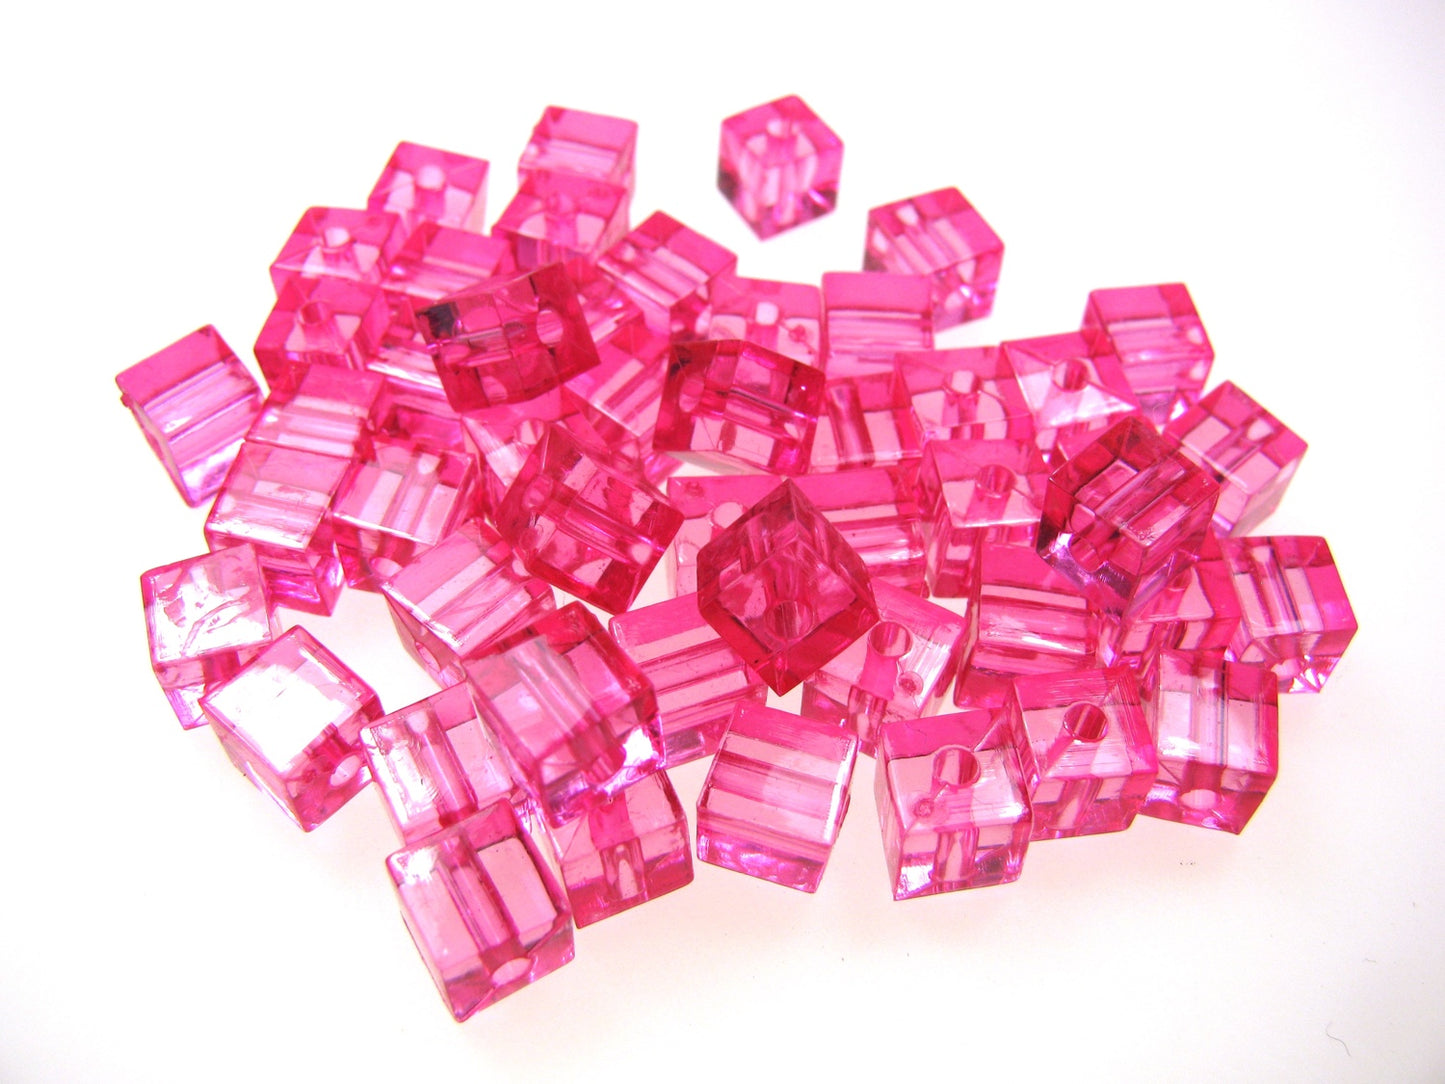 50 Acrylperlen Würfel rosa, pink,  7mm, Schmuck mit Perlen basteln Kunststoff